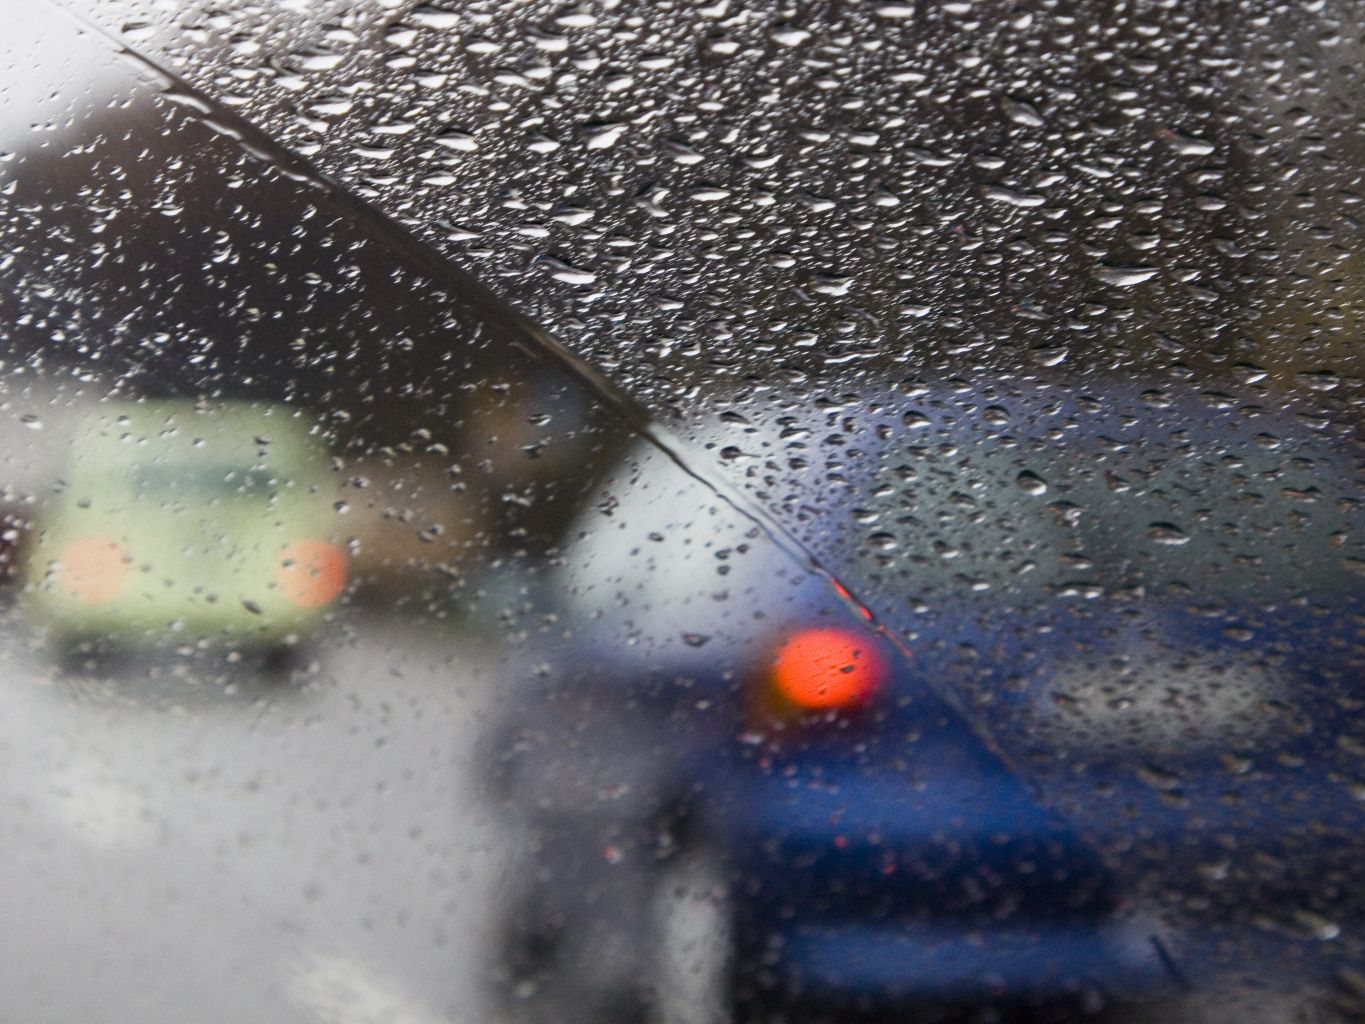 Autofahrer-Wissen: Das hilft gegen Feuchtigkeit im Auto